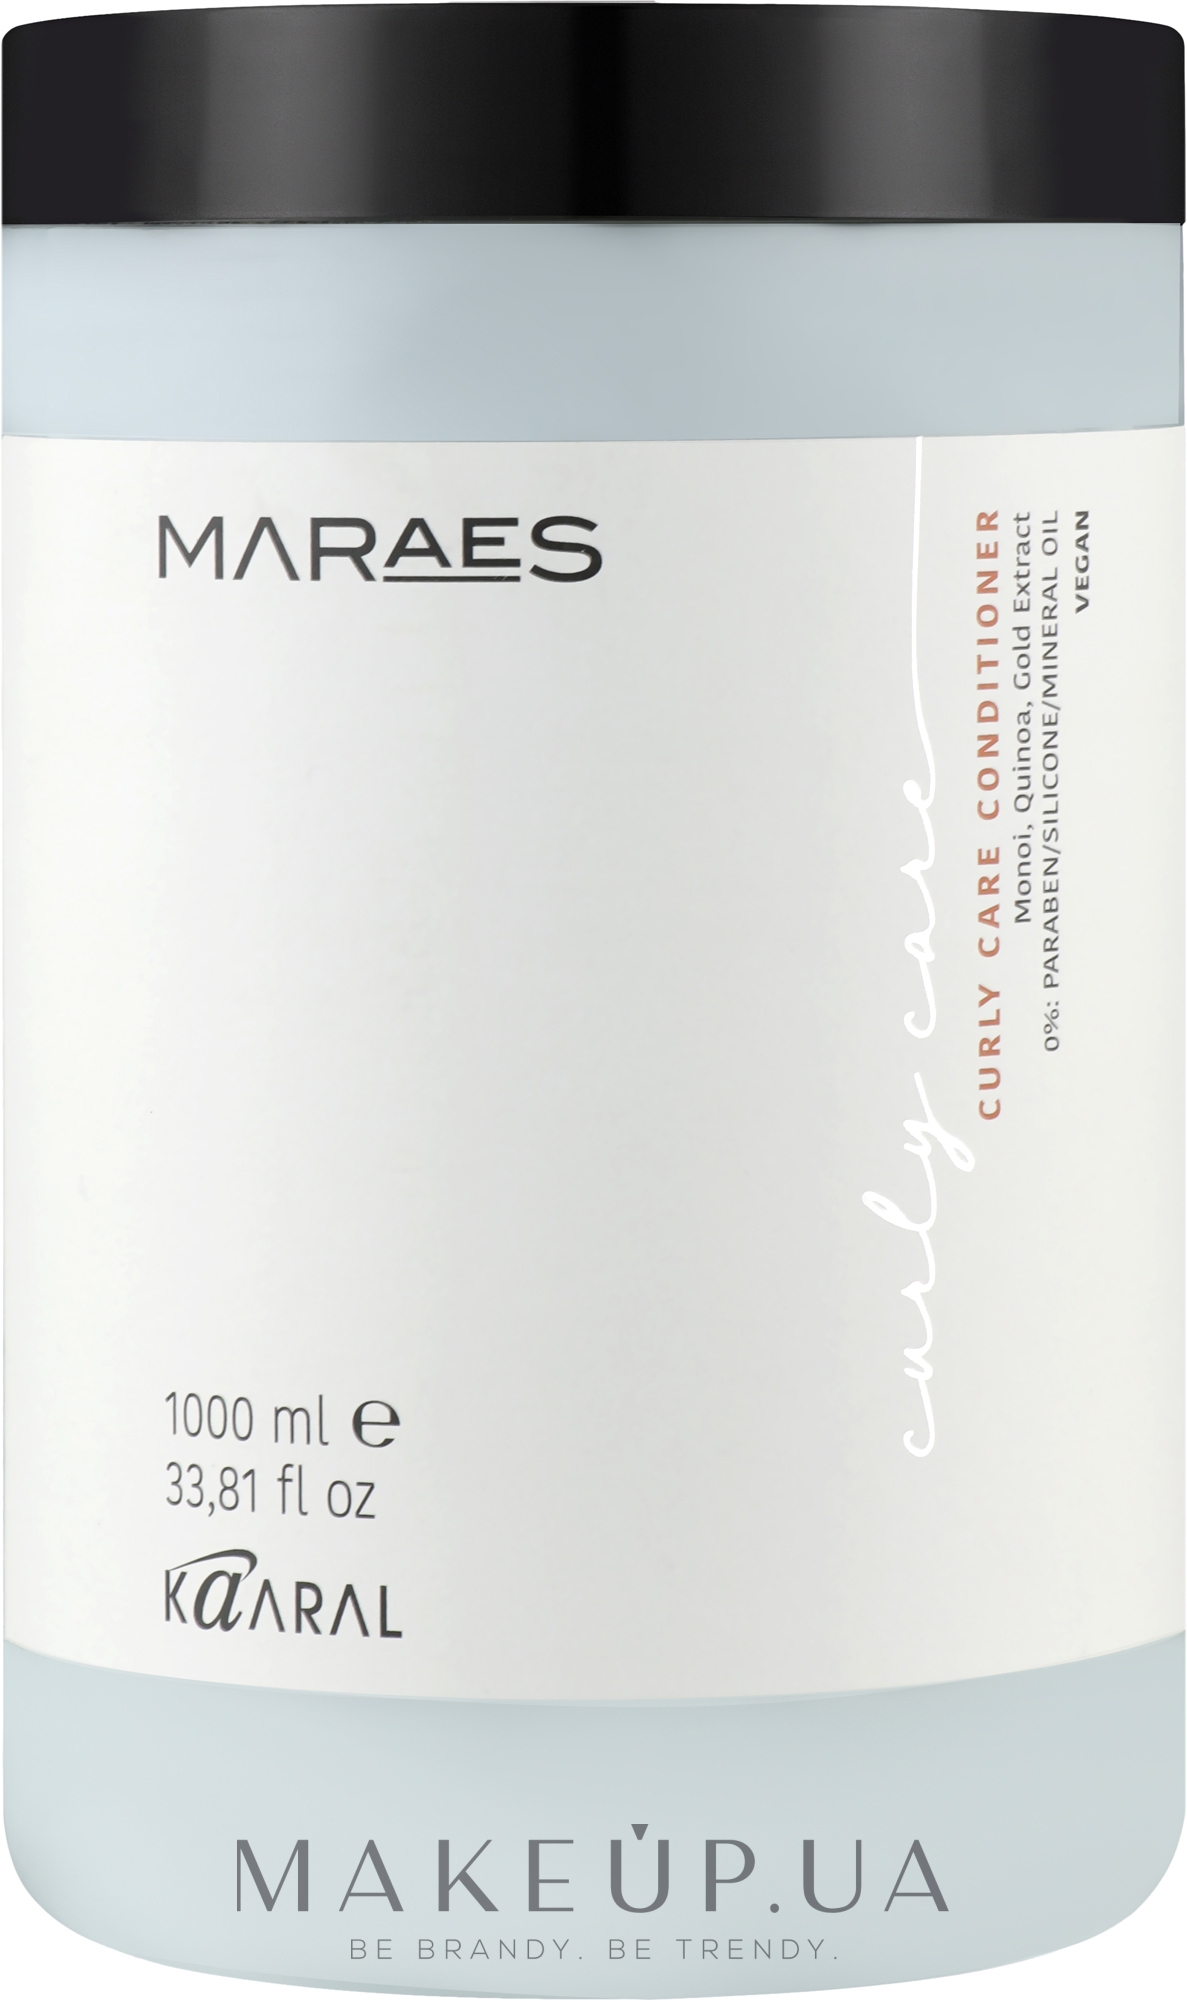 Кондиционер для вьющихся волос - Kaaral Maraes Curly Care Conditioner — фото 1000ml